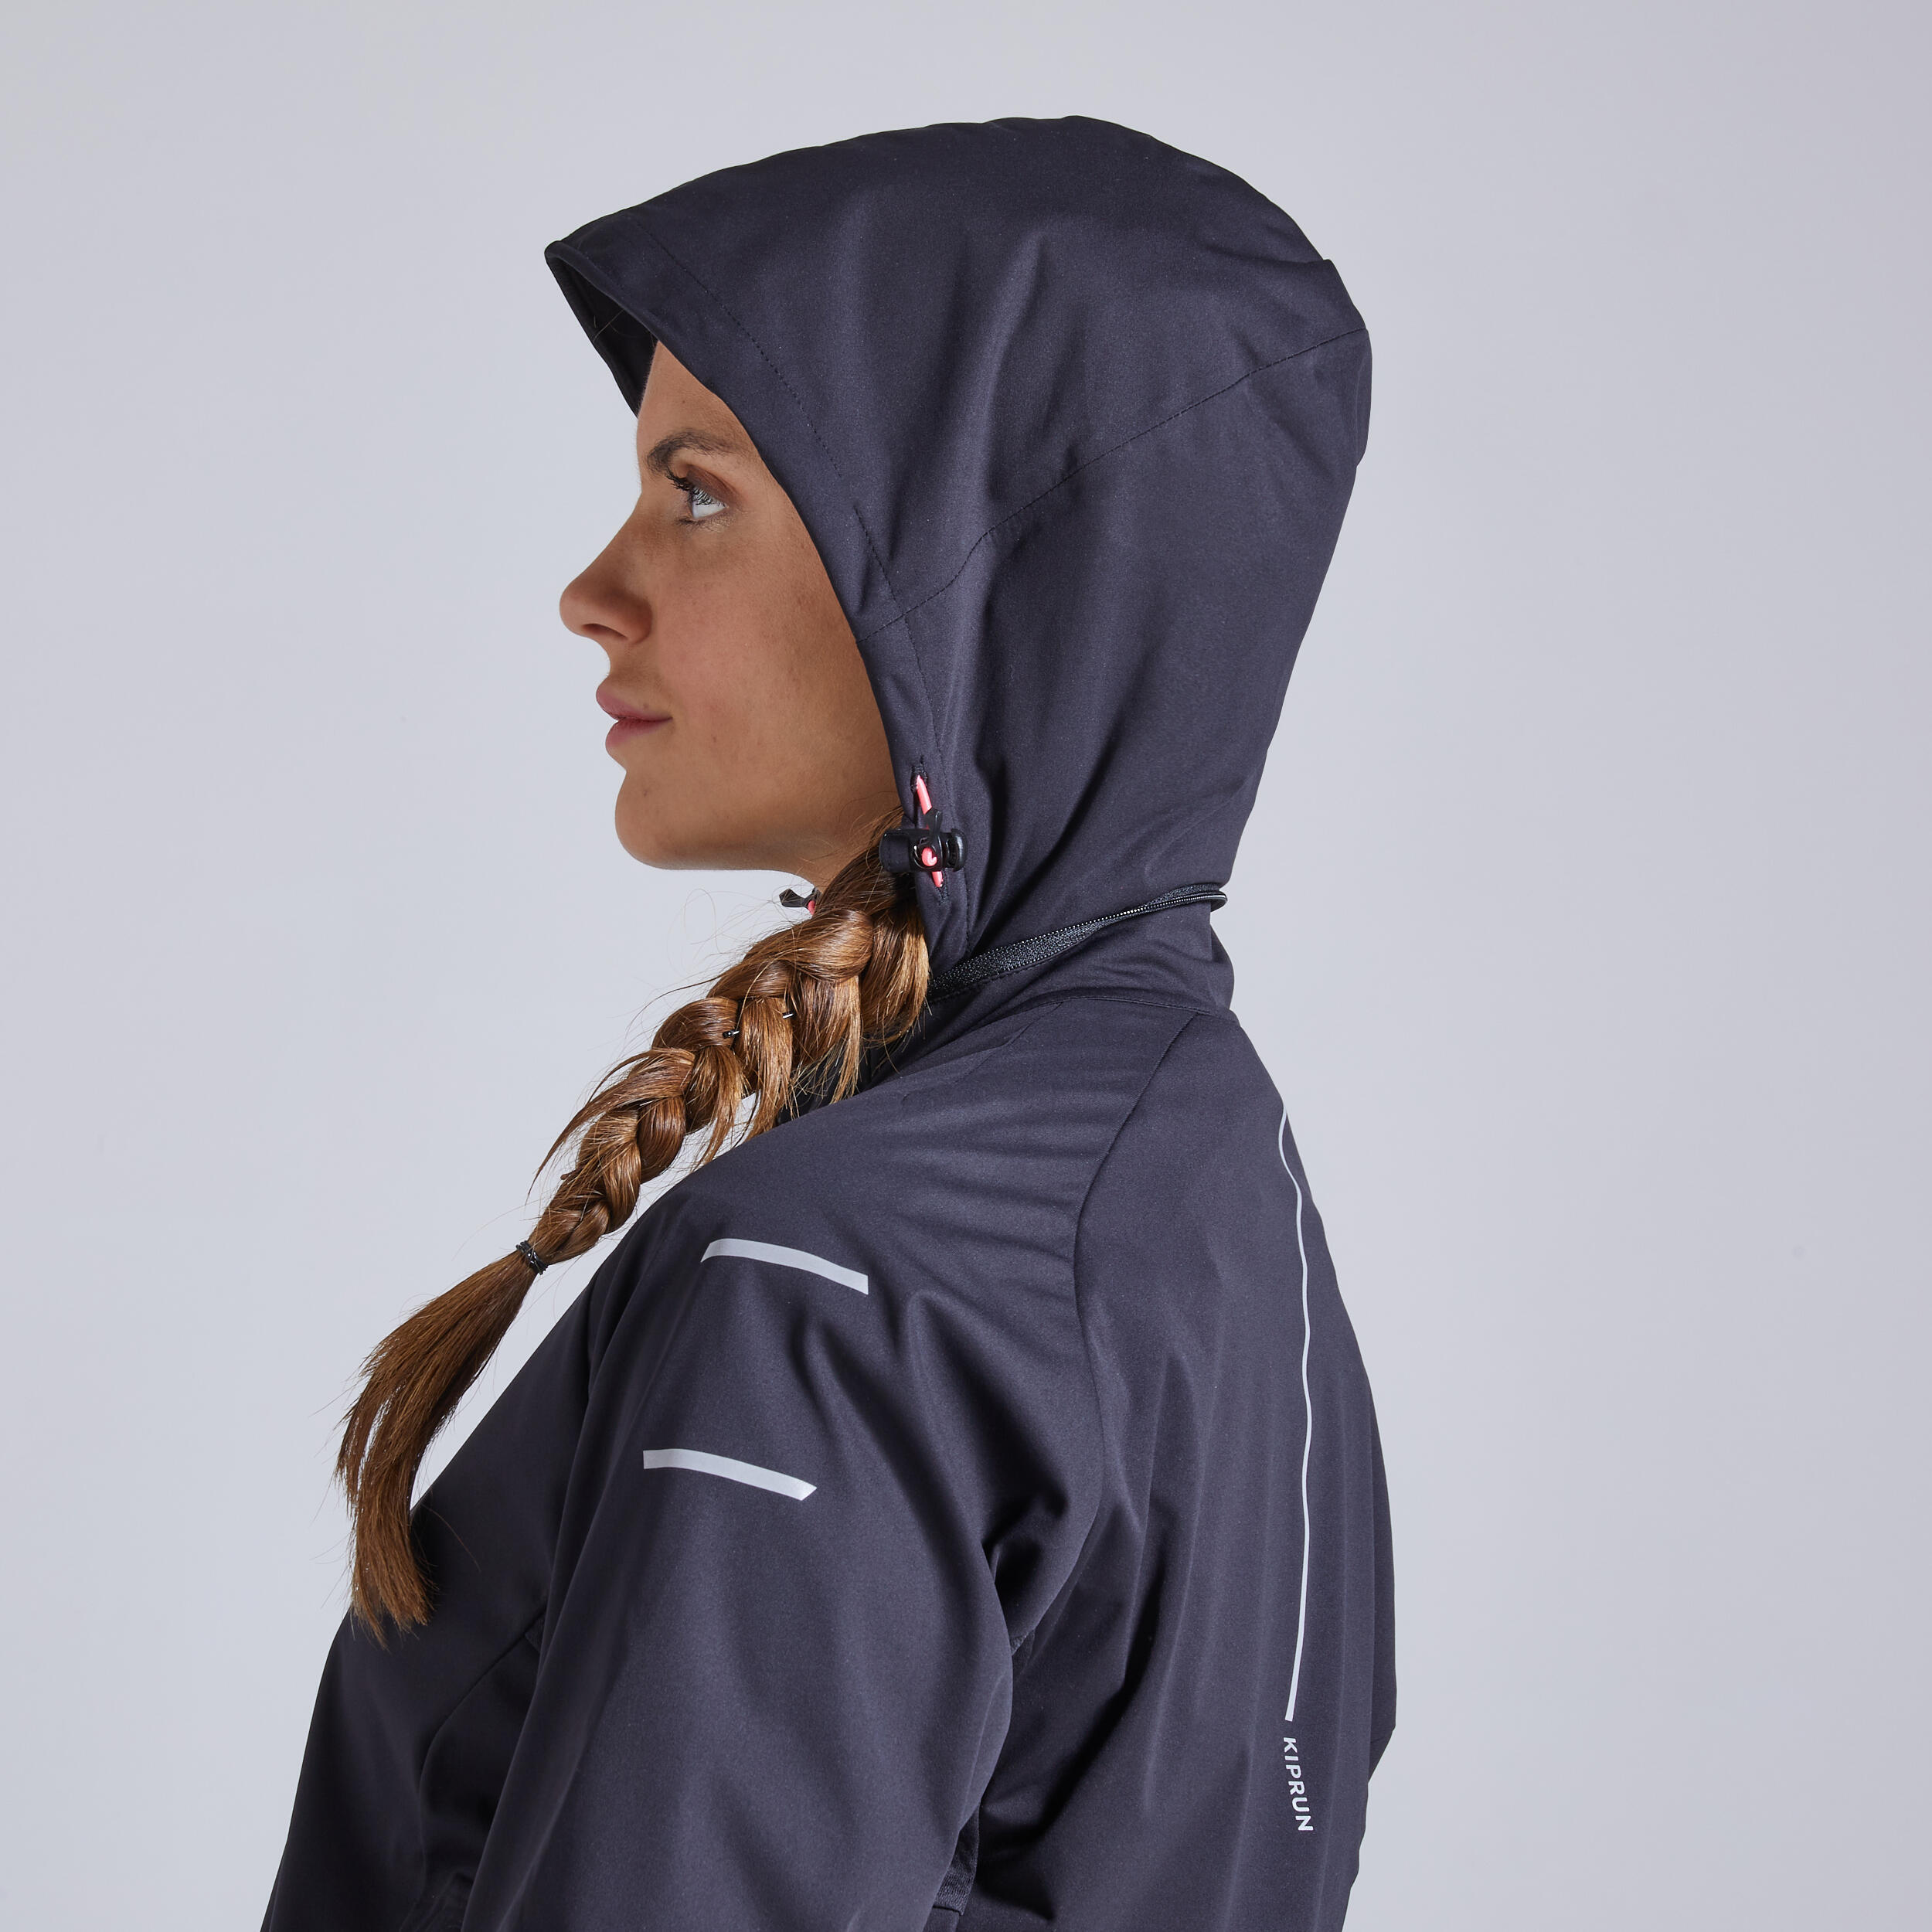 Kiprun Warm Regul Women's Running Water Repellent Windproof Jacket - Black 6/12